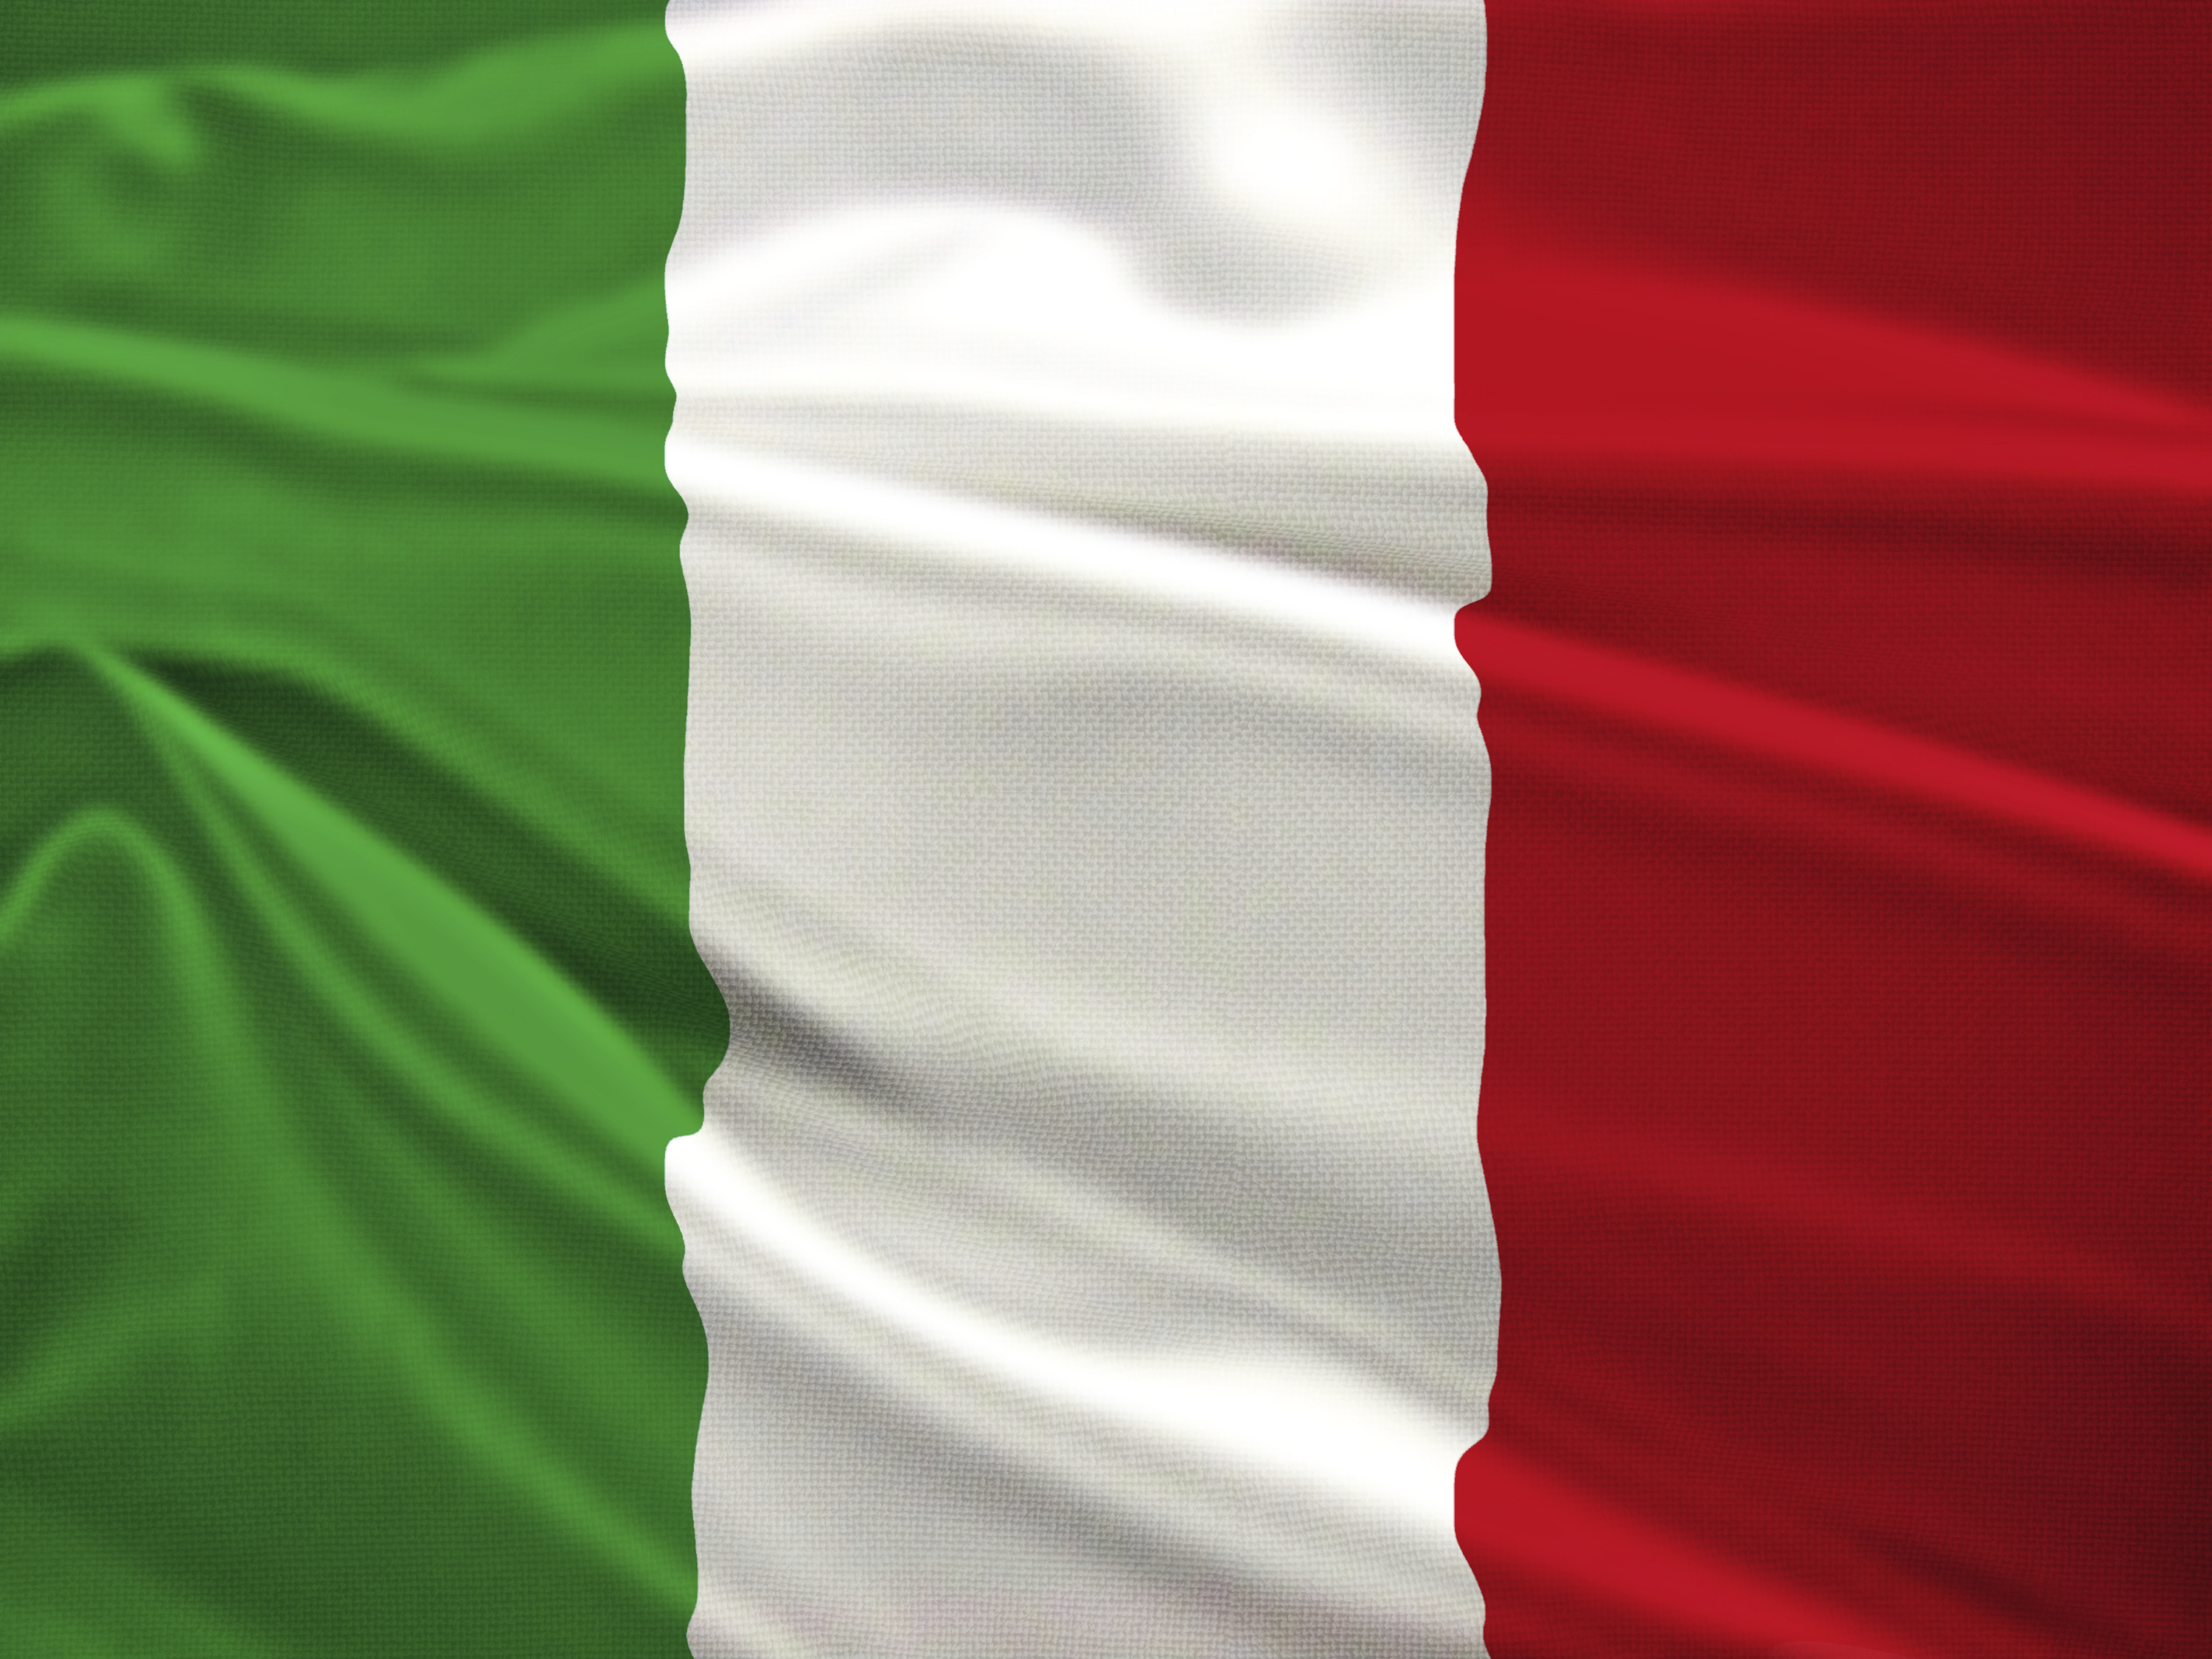 financialounge -  BTP inflazione investitori istituzionali italia orizzonte temporale premio rendimenti